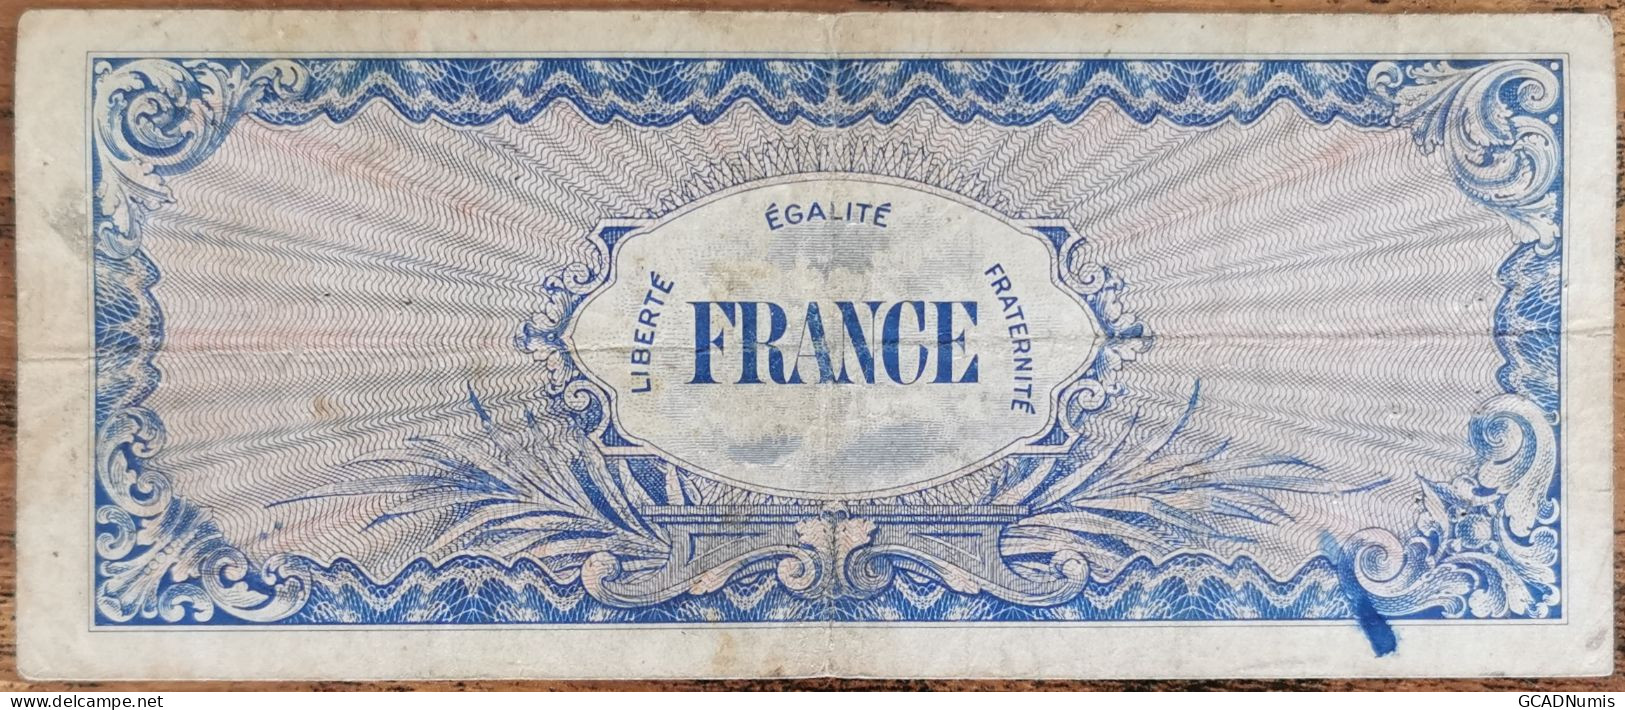 Billet 100 Francs 1944 FRANCE Préparer Par Les USA Pour La Libération Série 7 - 1944 Drapeau/Francia